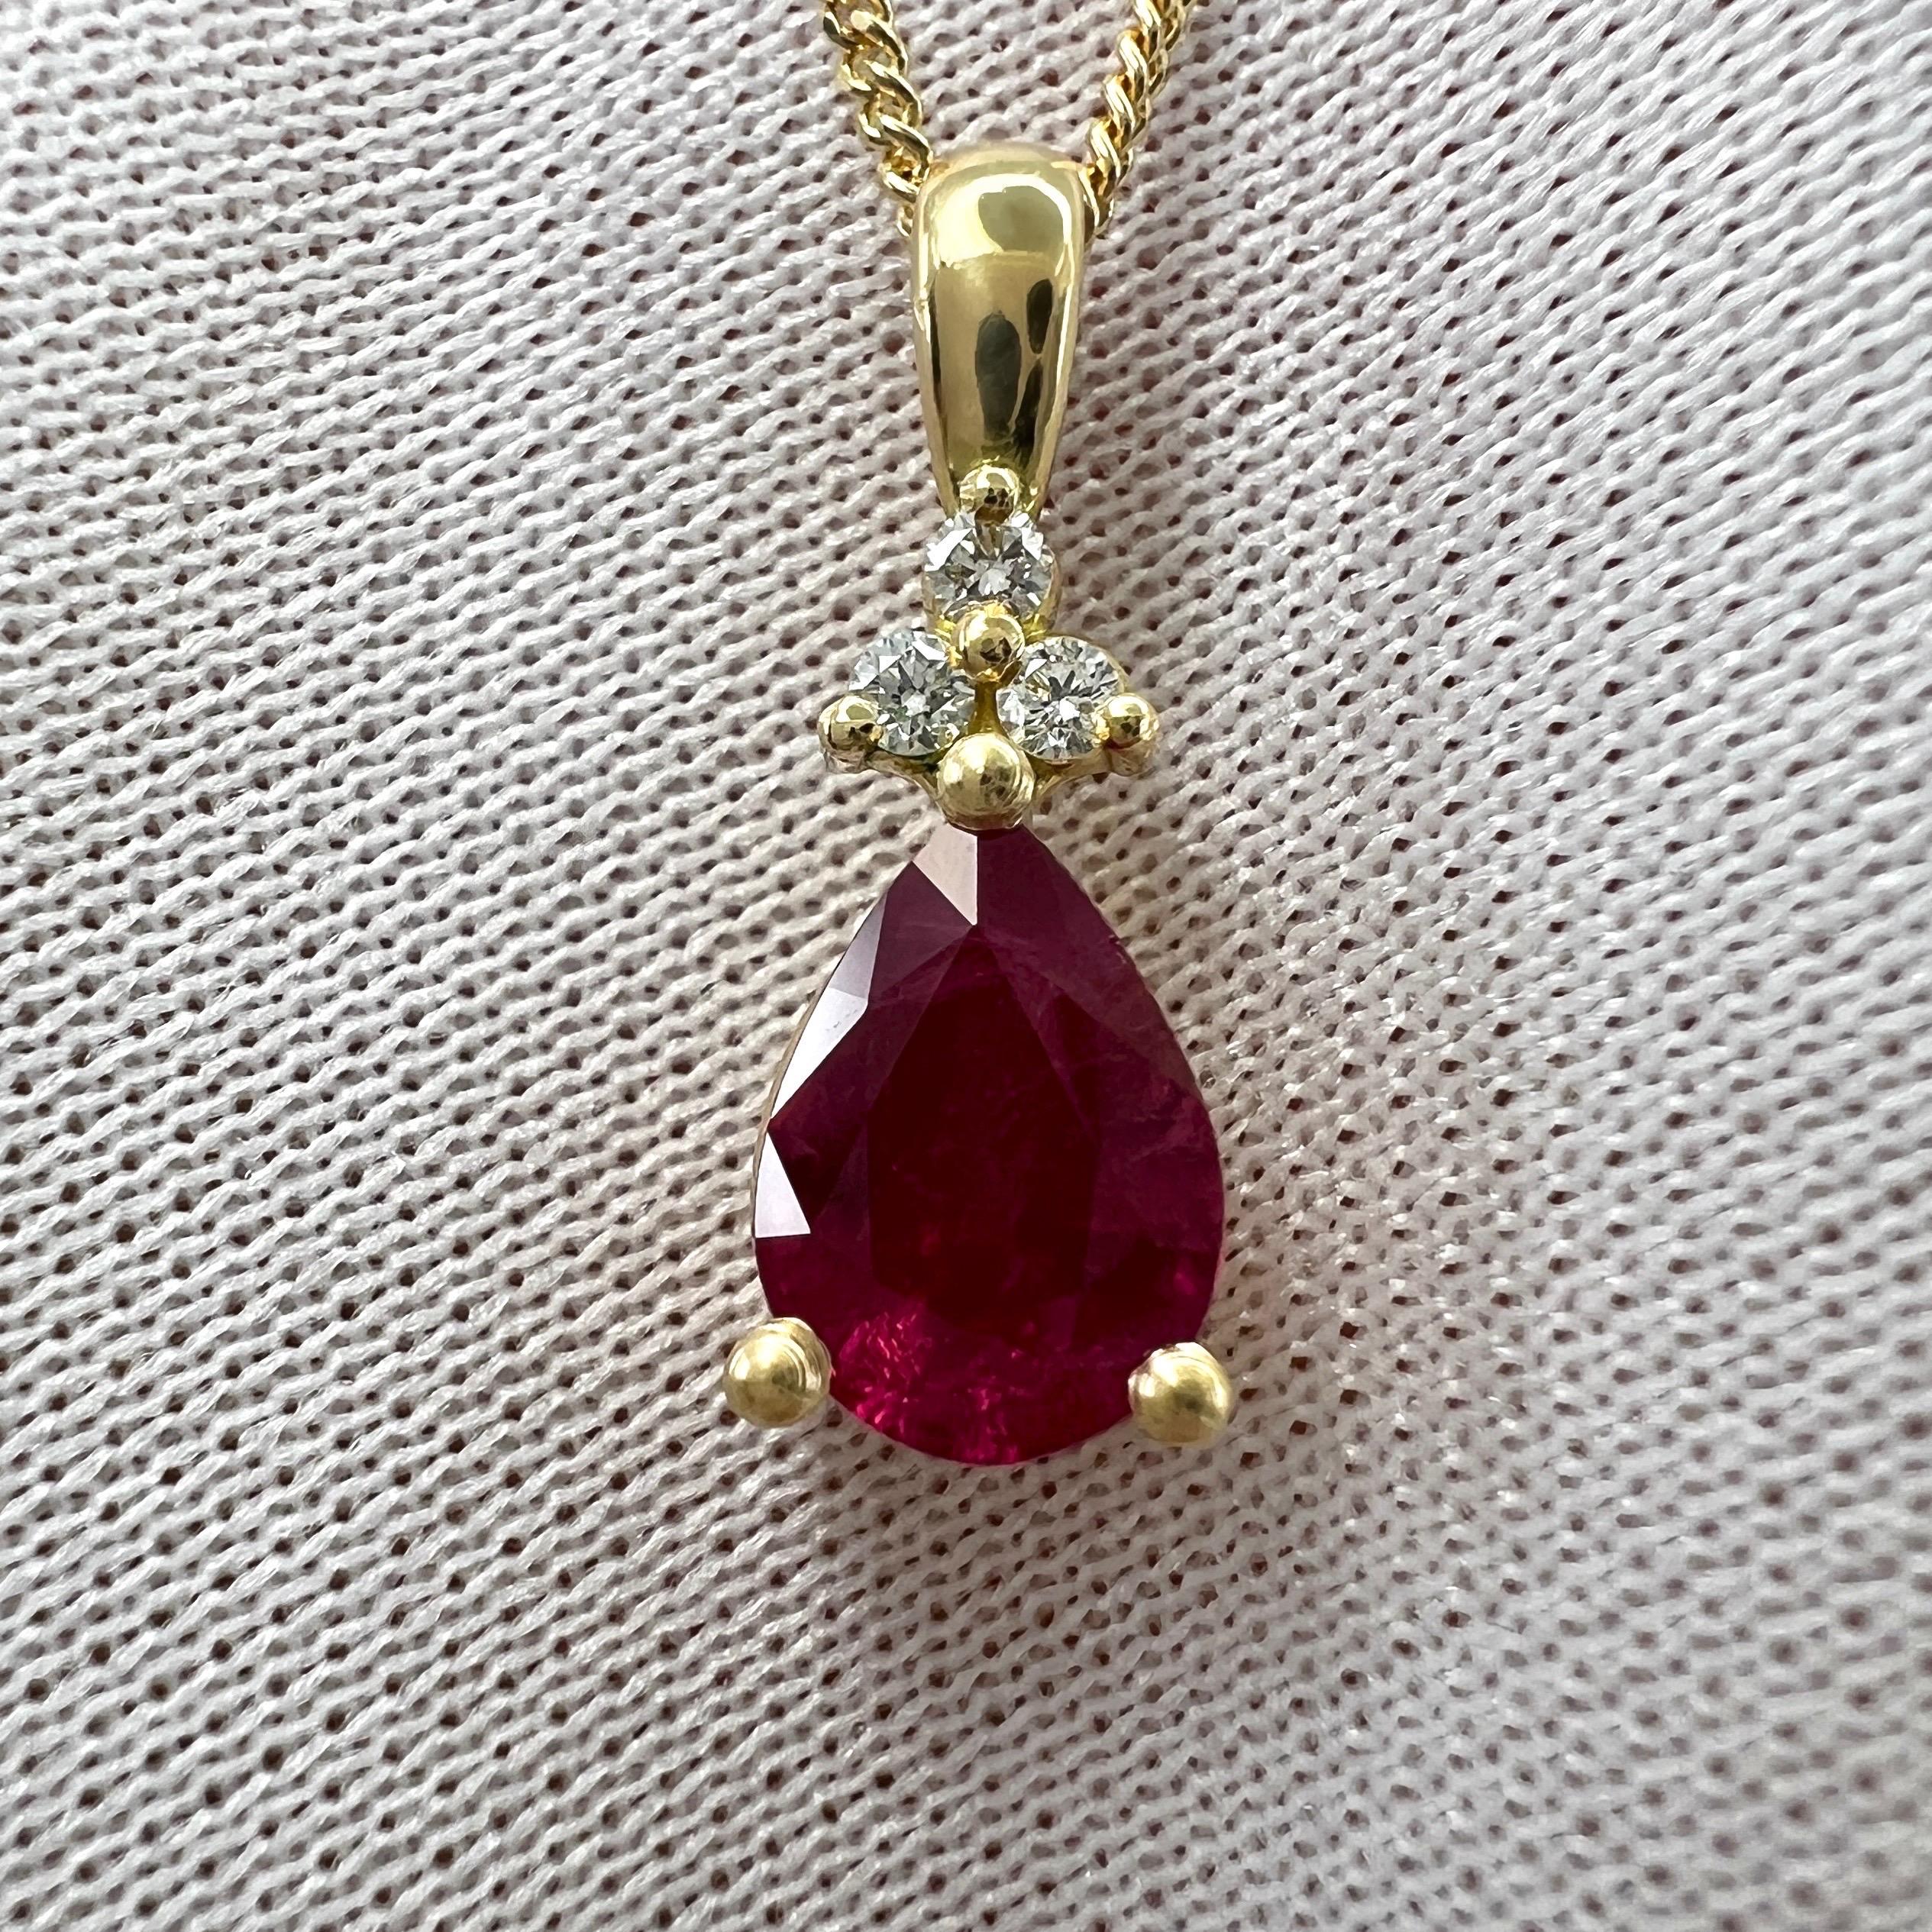 Collier pendentif en or jaune 18k avec diamant et rubis rouge rose profond de taille poire naturelle.

Cette pièce présente un magnifique rubis naturel de 1,37 carat d'une couleur rouge rosé profond, cette pierre a une excellente taille poire